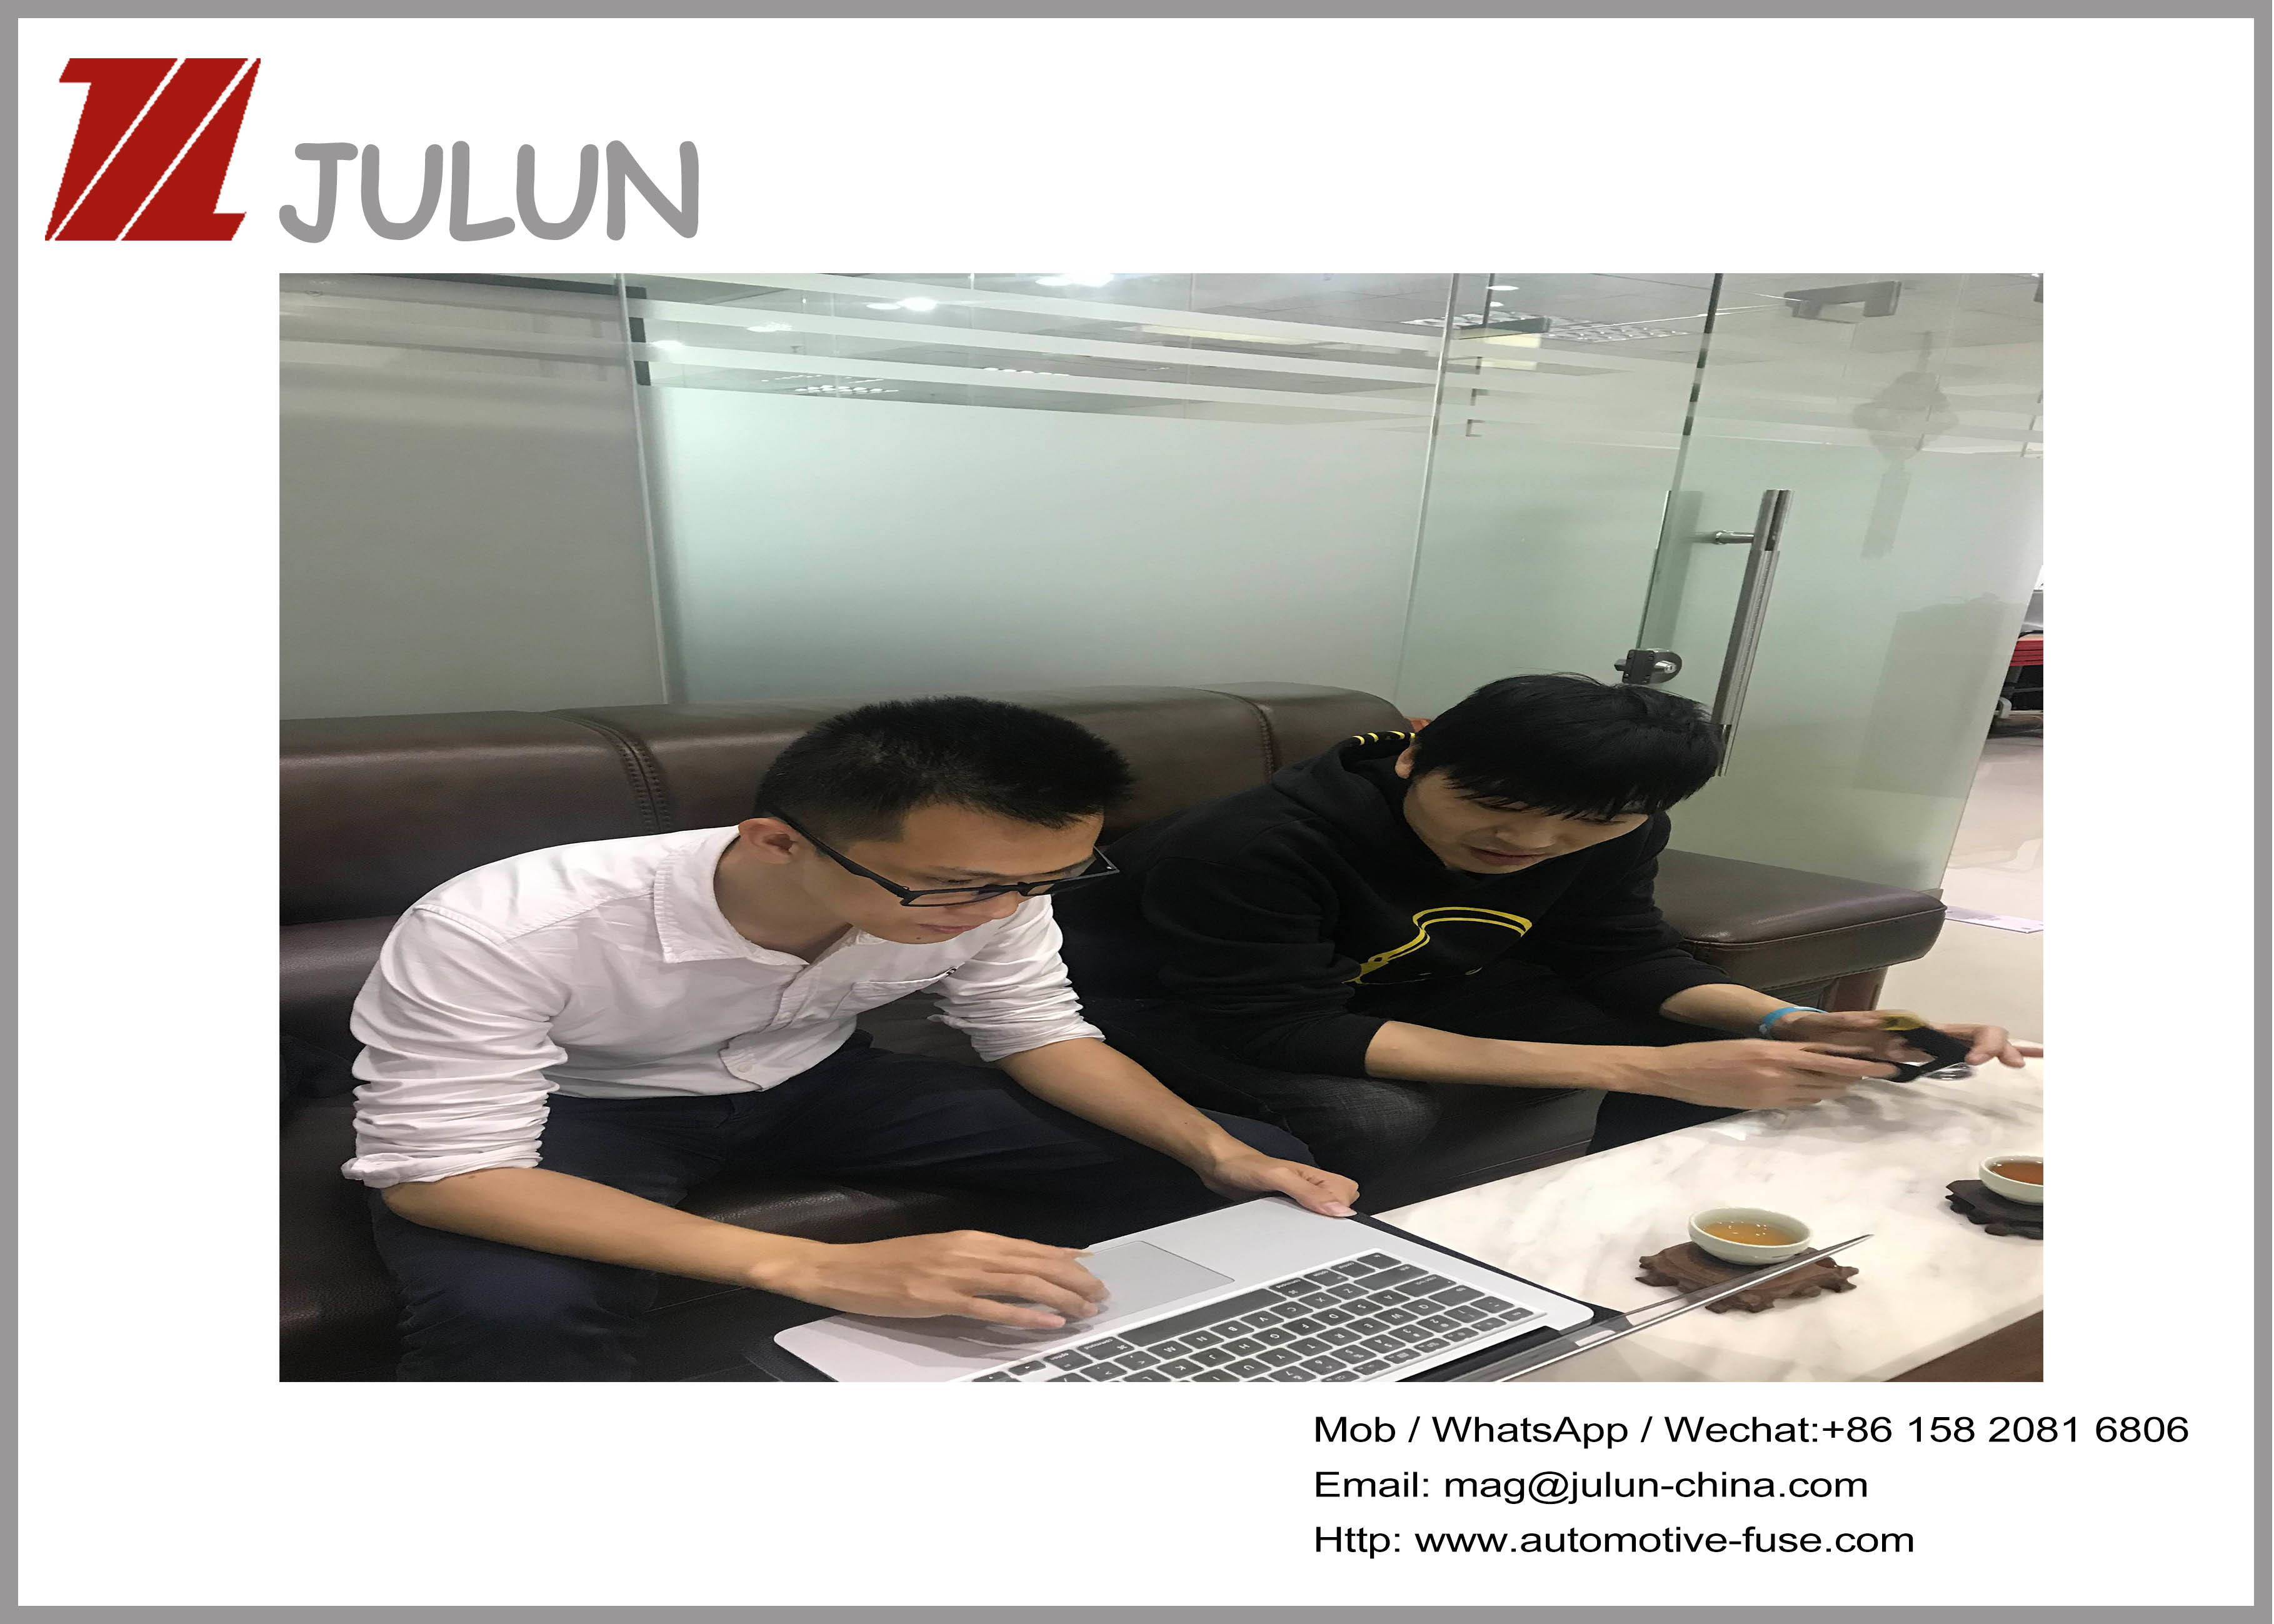 中国 JULUN (H.K)CO.,LTD (DONGGUAN JULUN ELECTRONICS CO.,LTD) 会社概要